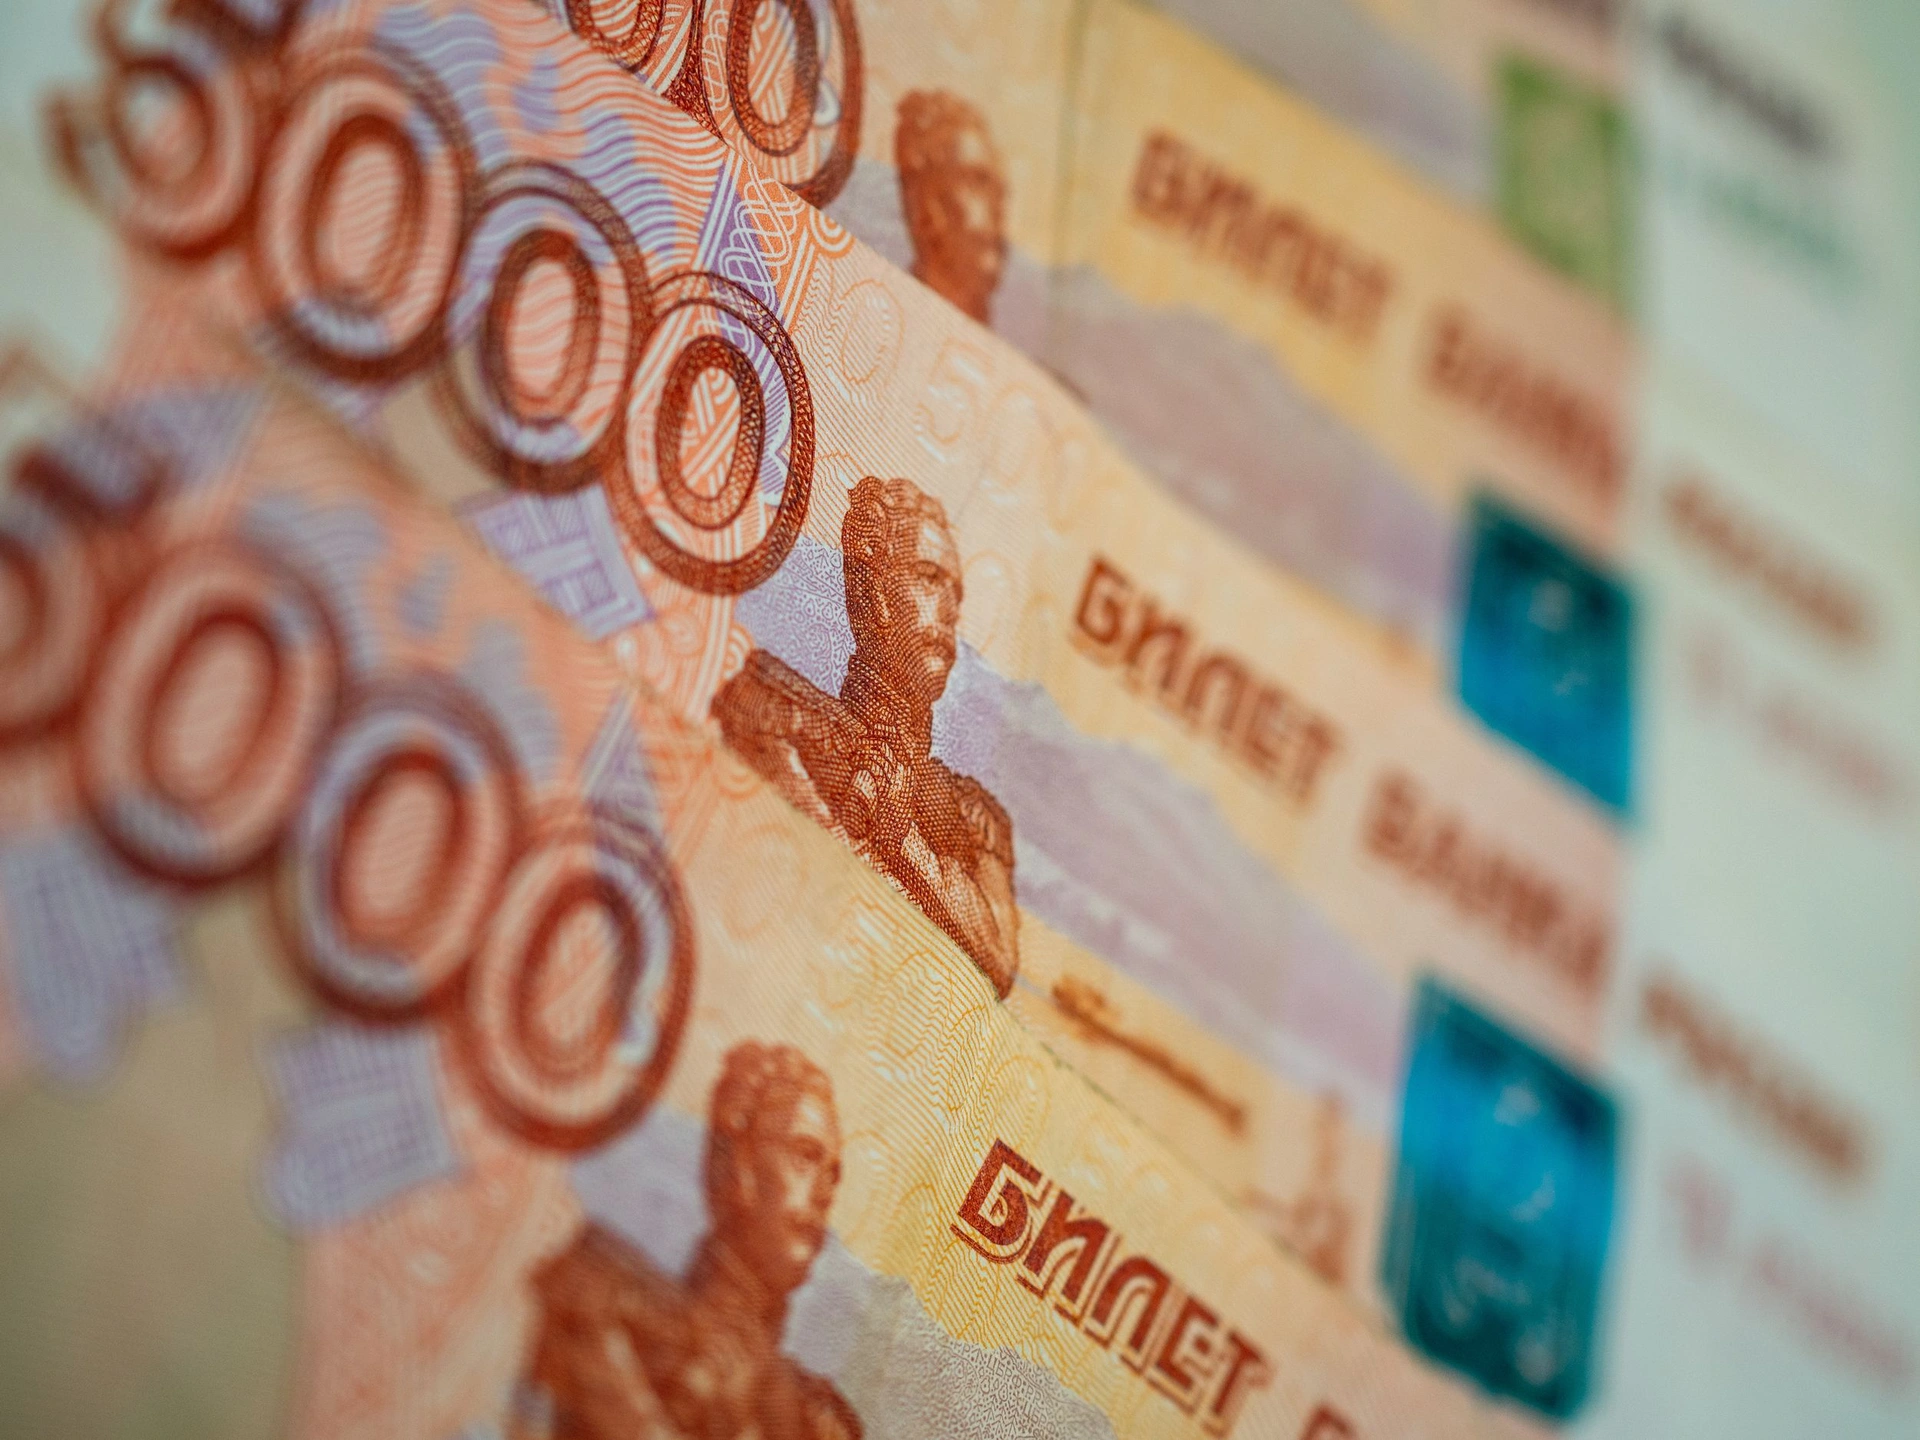 Пять центров соцобслуживания на Ямале выиграли восемь грантов на 9 млн рублей